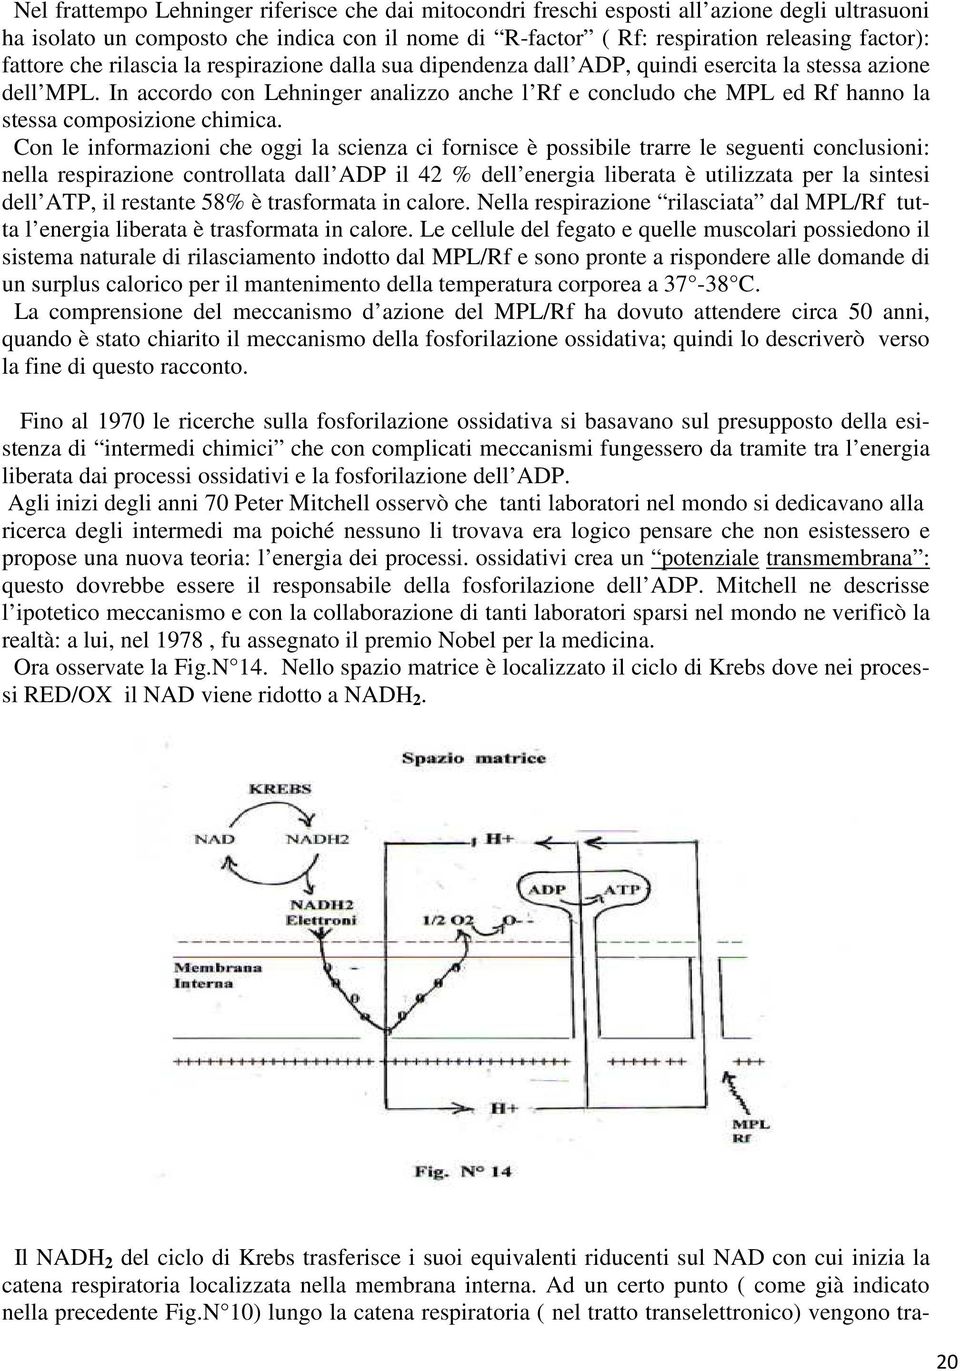 In accordo con Lehninger analizzo anche l Rf e concludo che MPL ed Rf hanno la stessa composizione chimica.